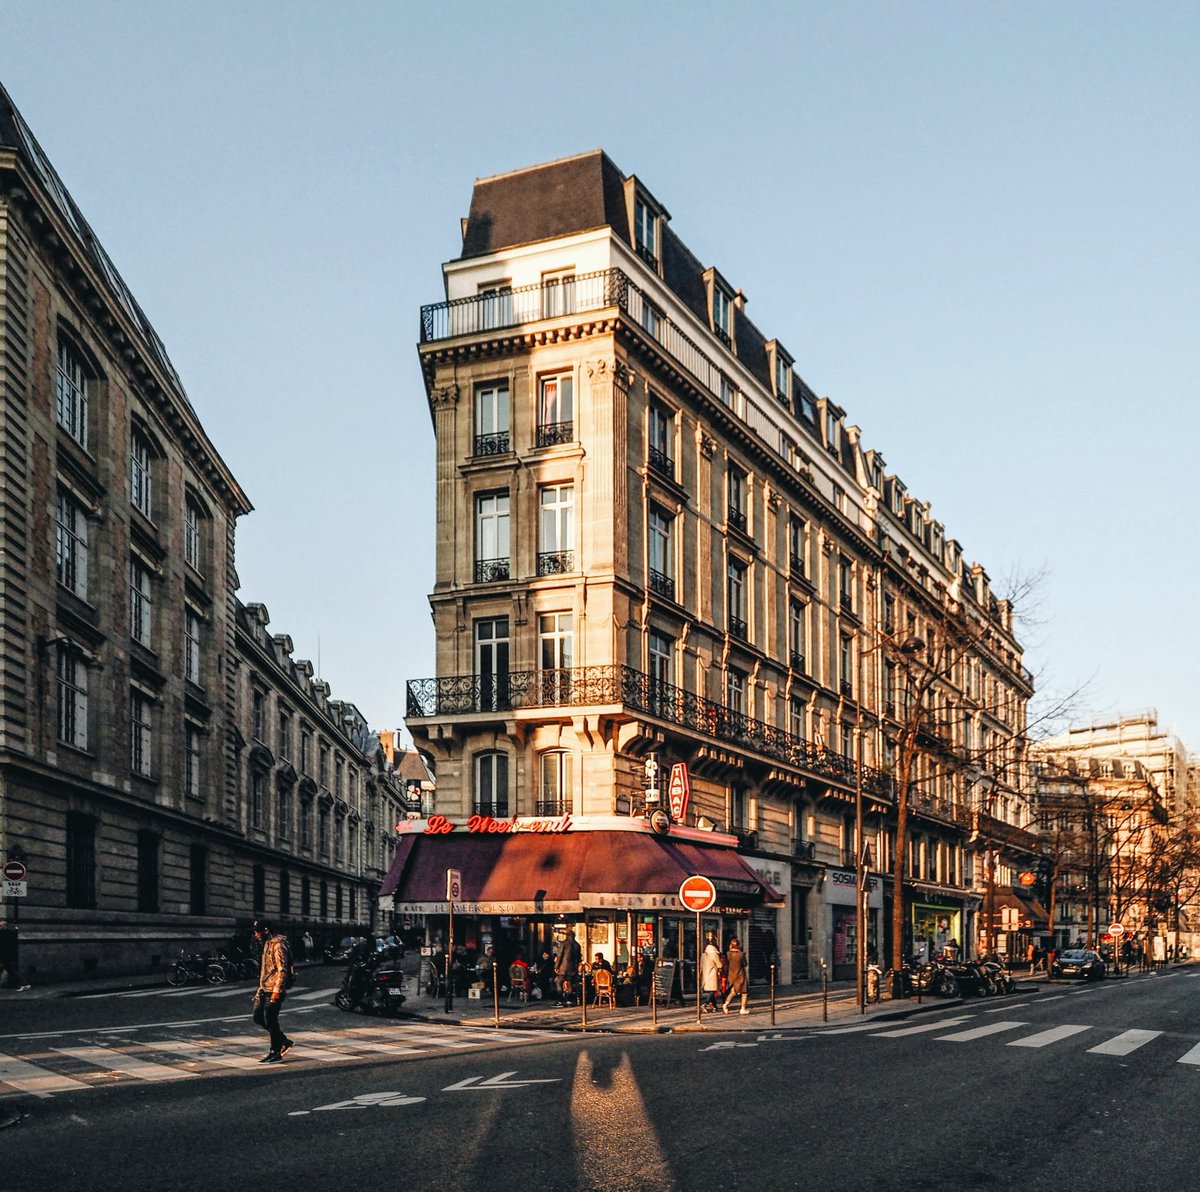 Parisian vibes
_____
@ParisJeTaime #parisjetaime @le_Parisien @Paris @VisitParisIdf @visitparisreg @VivreParis_ @vivreparis @ParisBouge @QueFaireAParis @Paris_Tourisme #streetphotography #street #photooftheday #photography #paris #france